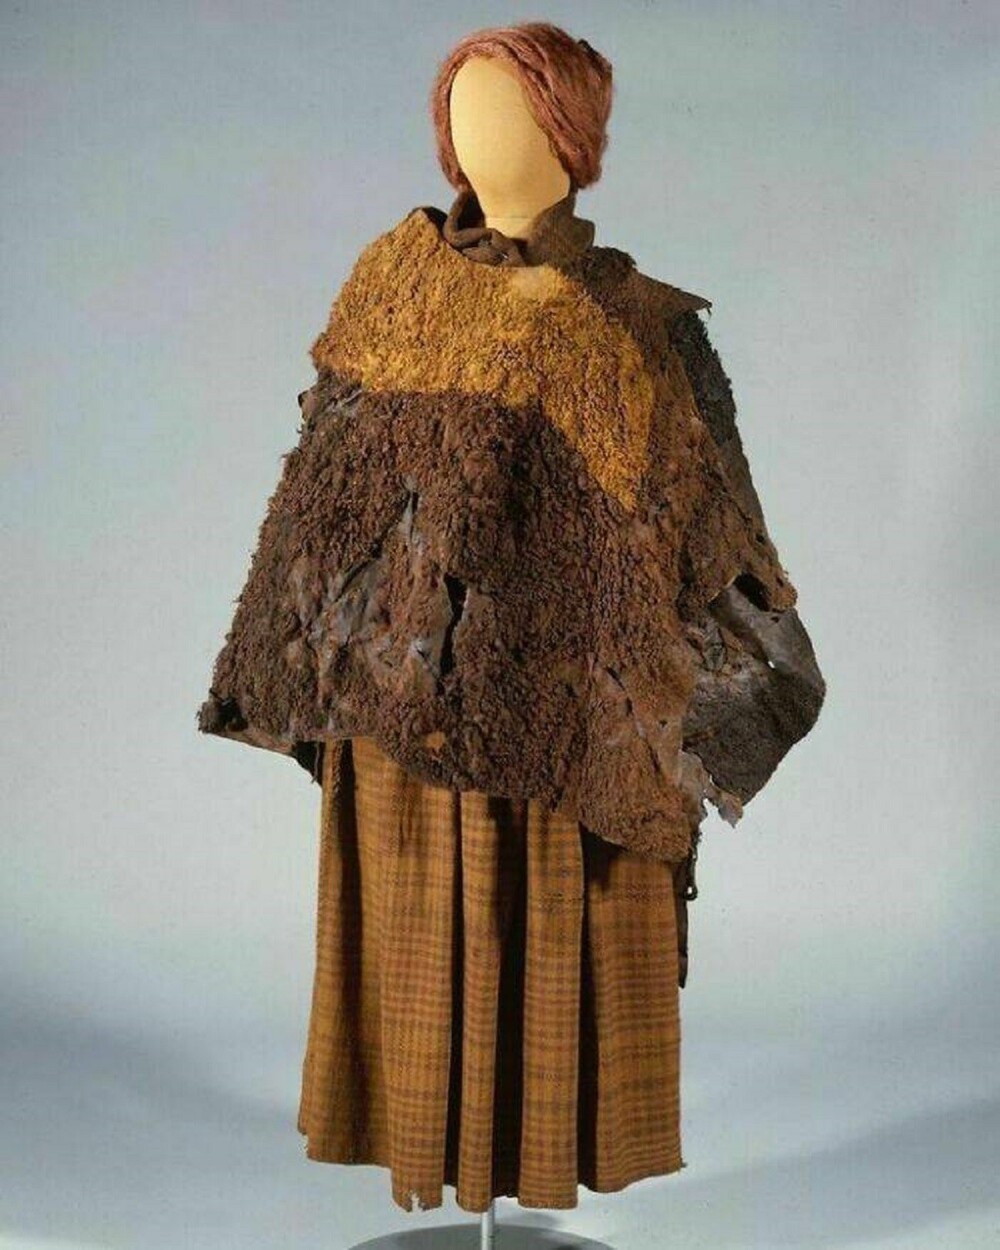 12. Одежда женщины Хульдремозе возрастом 2000 лет, тело которой было найдено в 1879 году в торфяном болоте недалеко от Рамтена в Дании